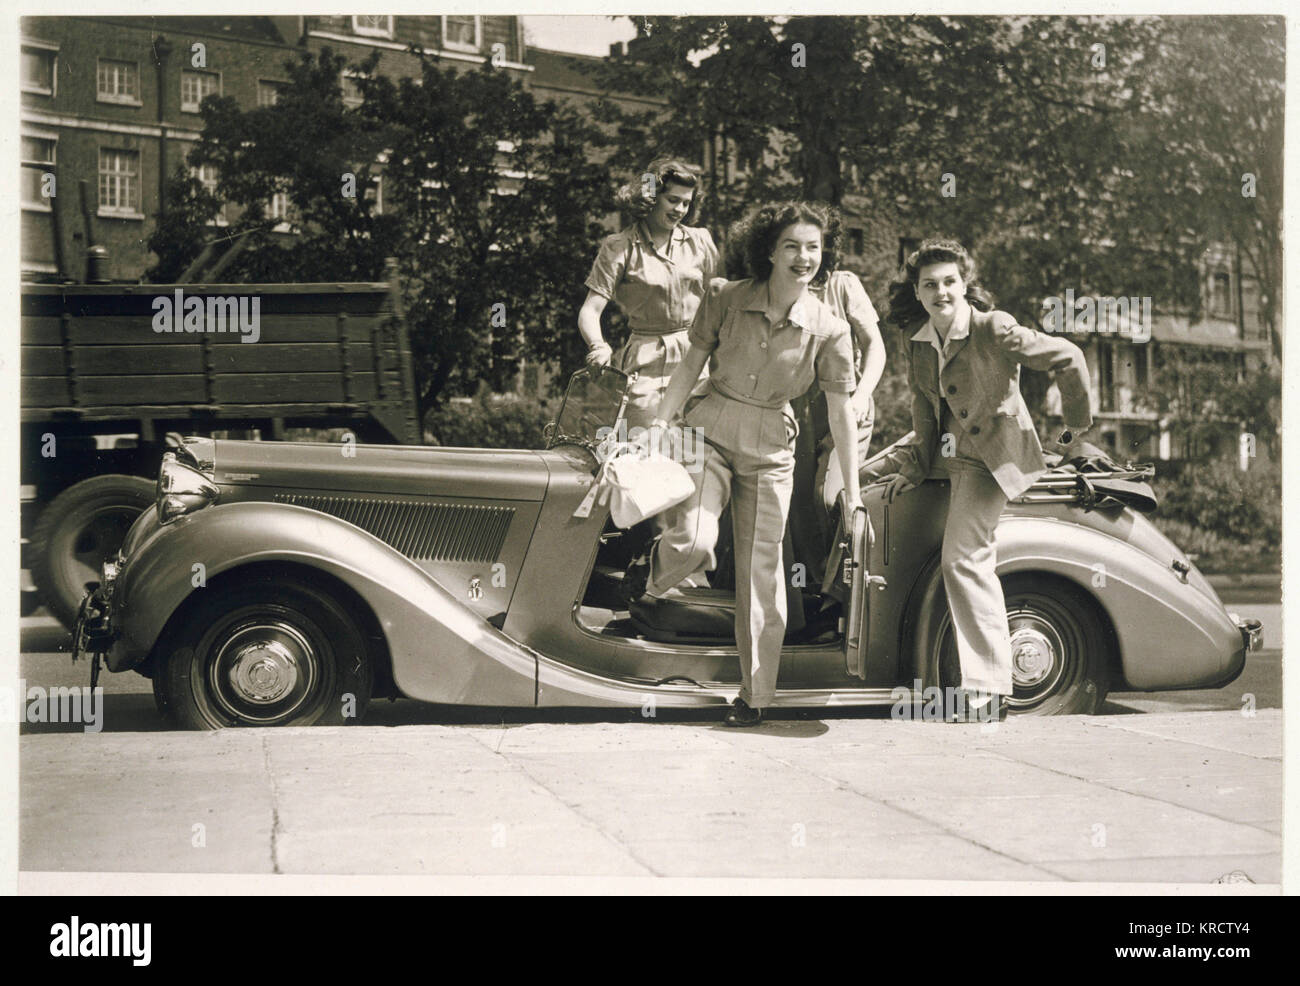 Vier bezaubernde Krieg - Zeit Frauen in hosenanzügen mit breiten Beinen Hose, Shirt Style Blusen &Amp; Jacken mit Schulterpolstern Sprung aus einem oben offenen Auto. Termin: Anfang 1940 s Stockfoto